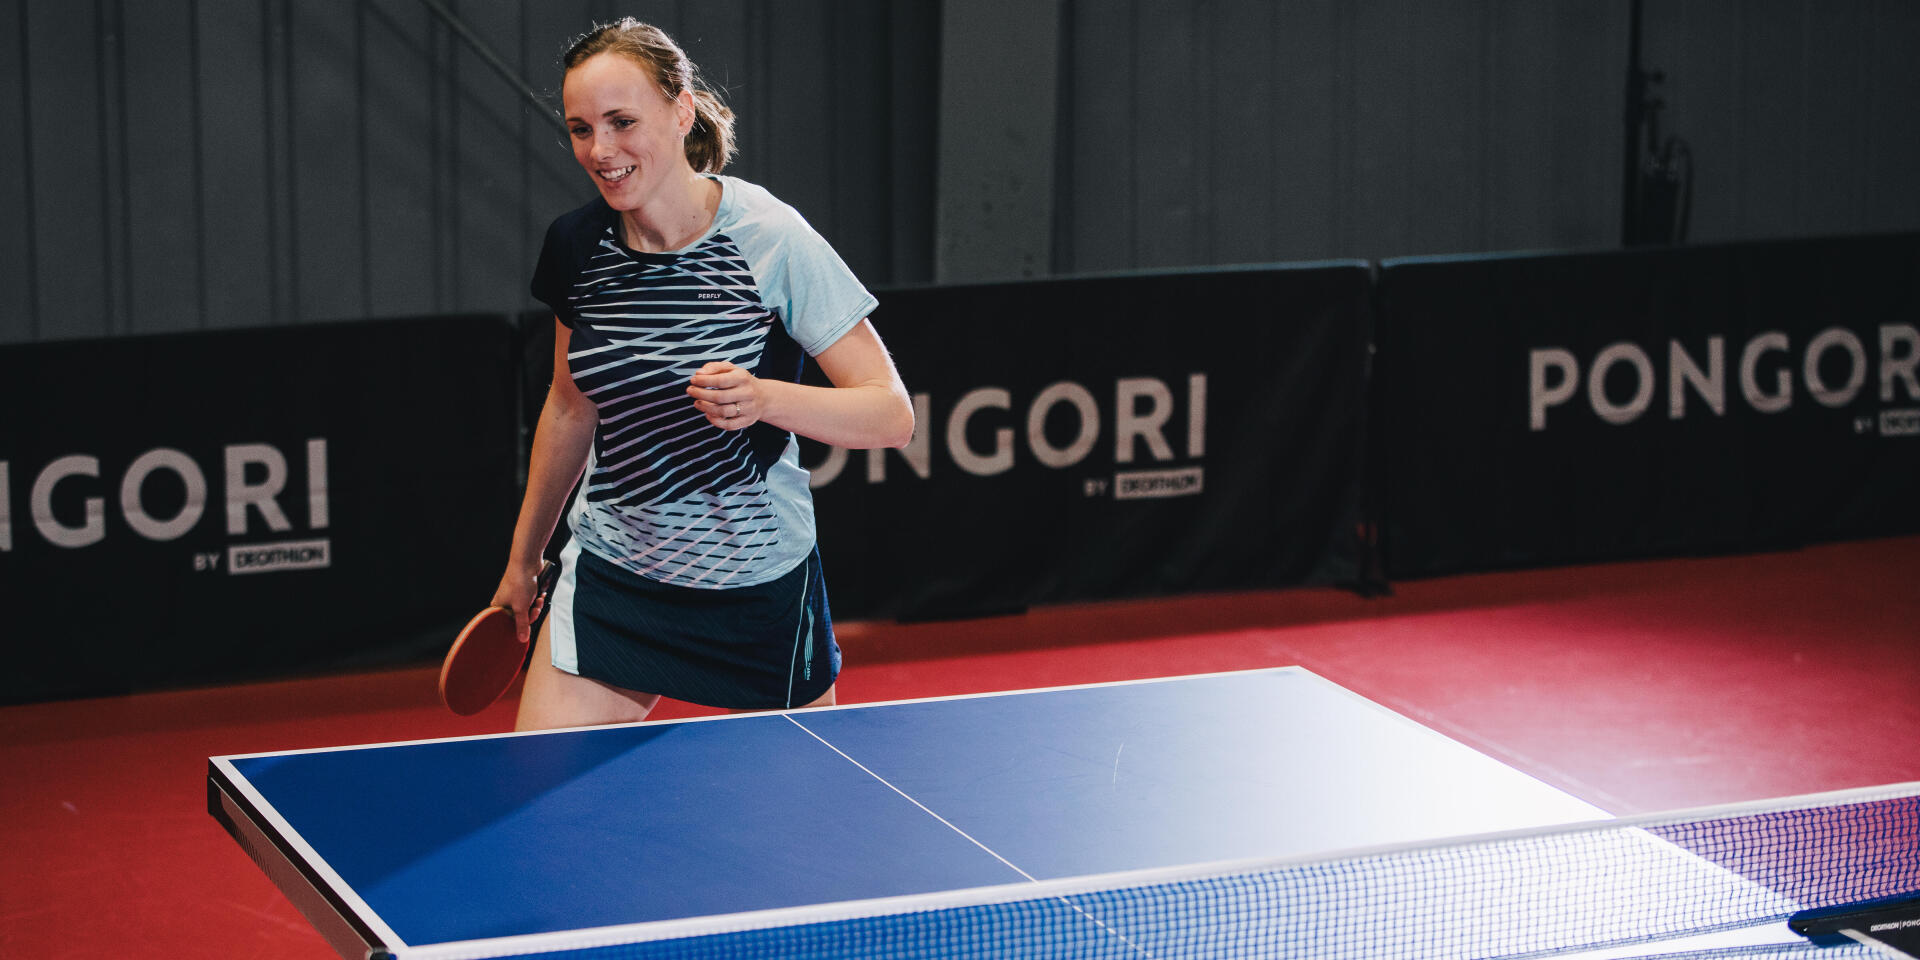 Paroles de championnes : les filles dans le monde du ping-pong